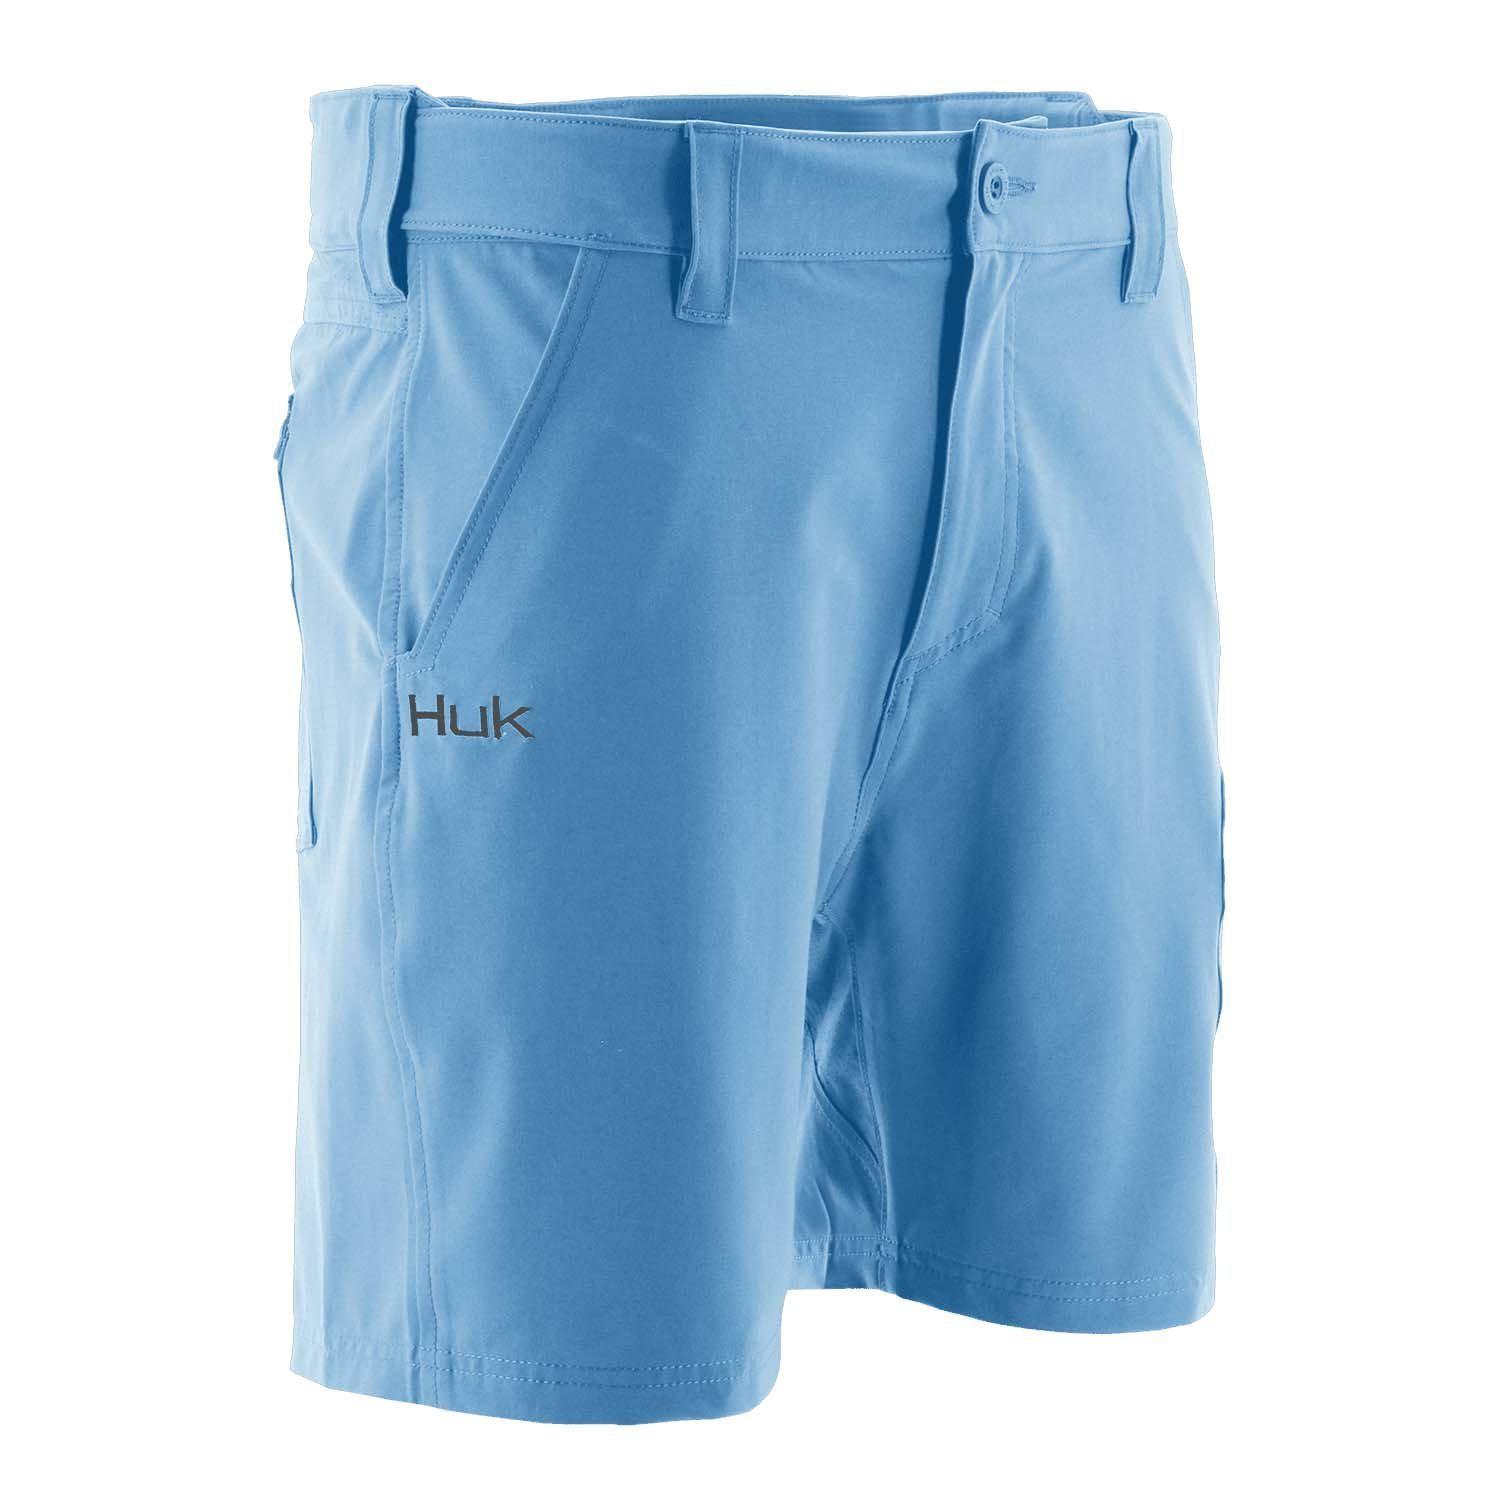 Huk Men's Next Level 7 Short, Carolina Blue / Medium